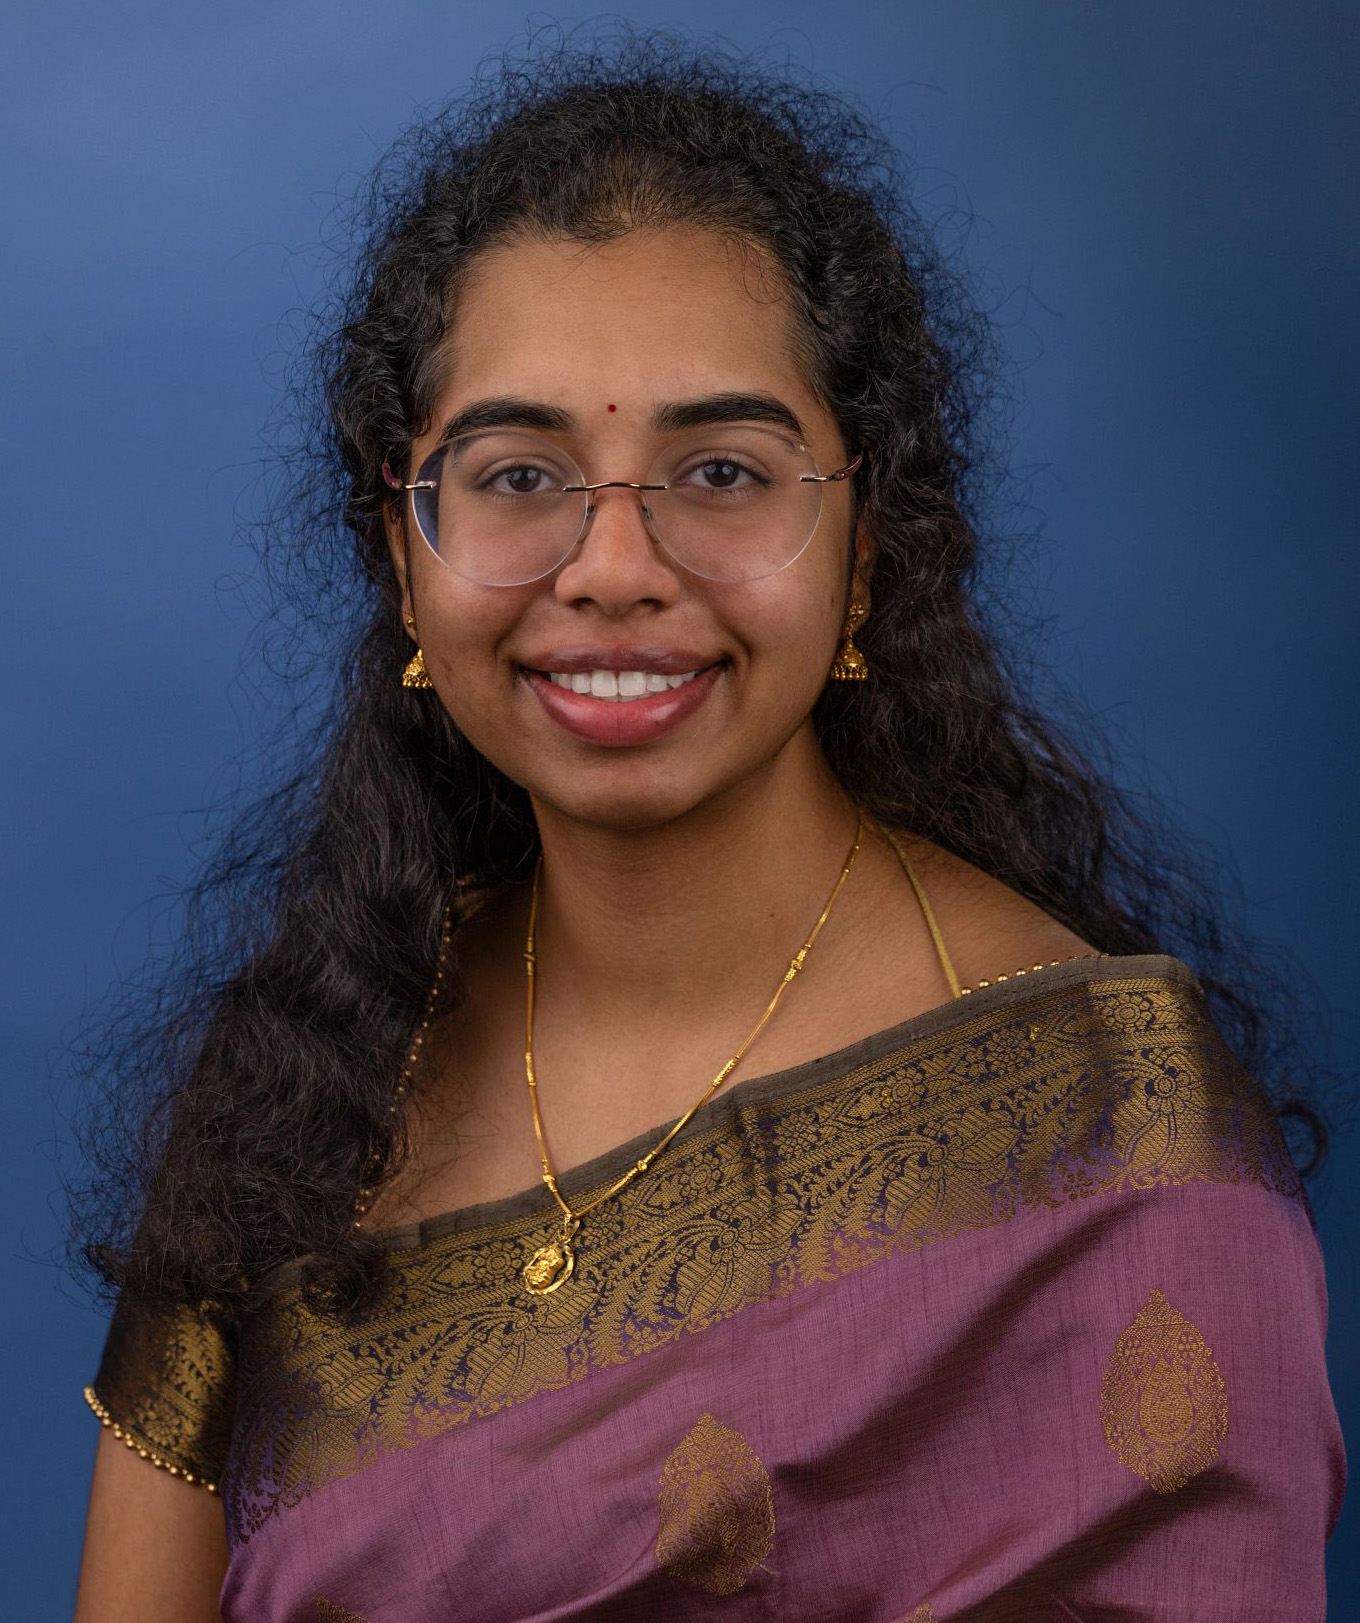 Sivani Badrivenkata, University of Kansas student